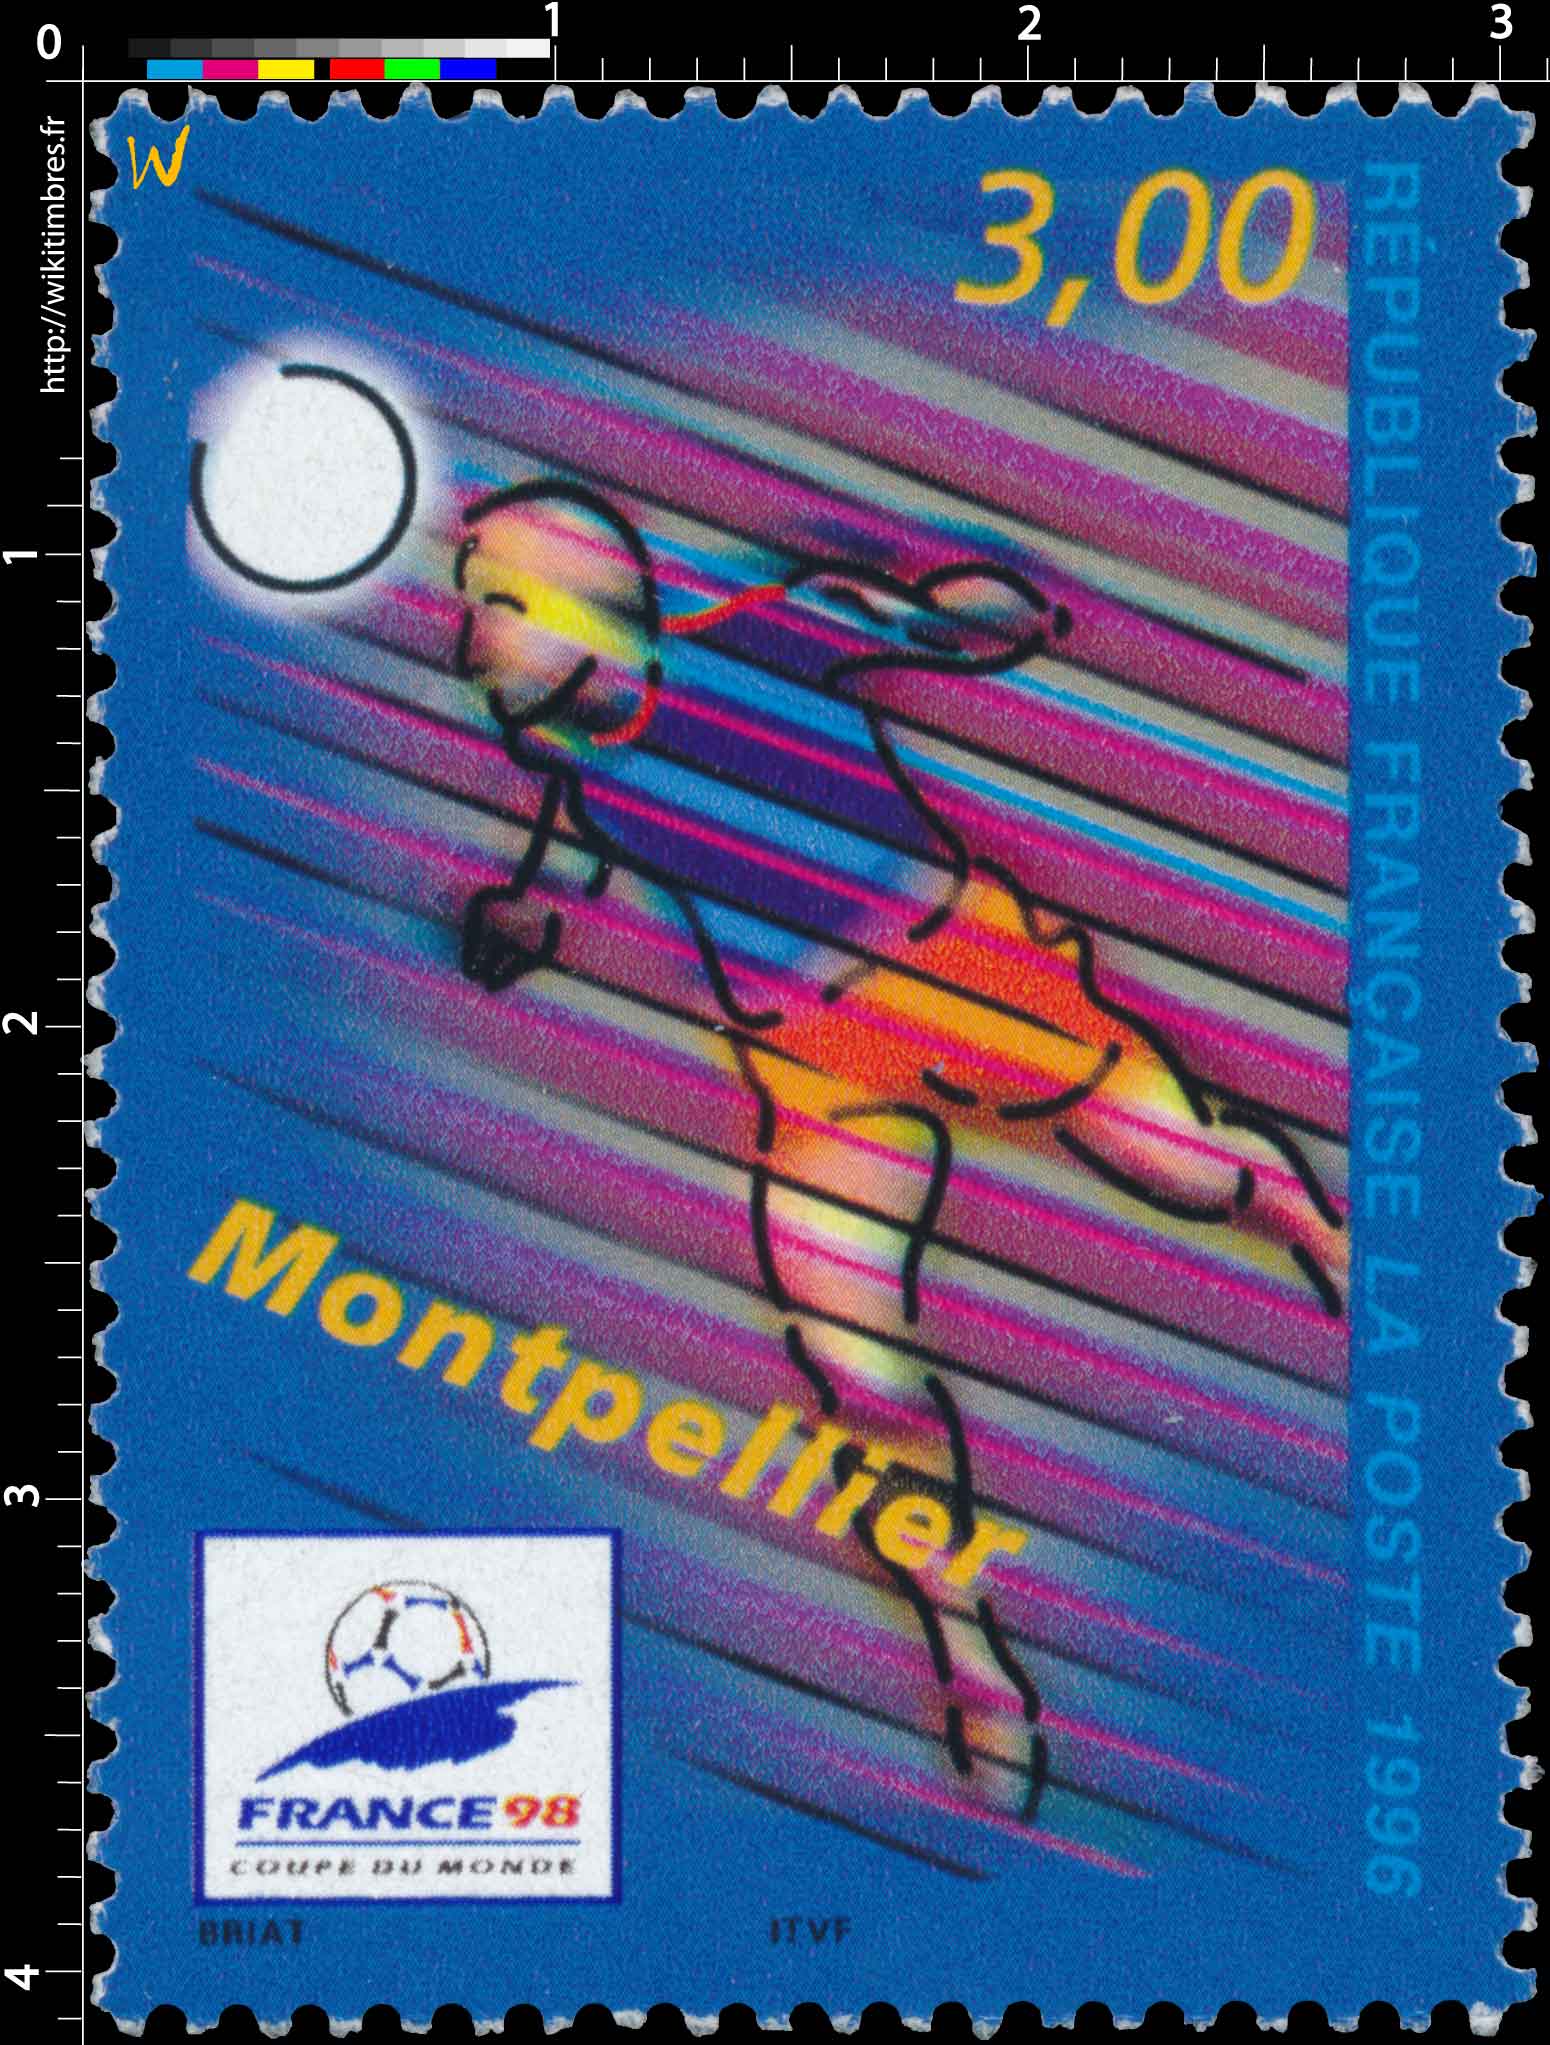 1996 FRANCE 98 Montpellier